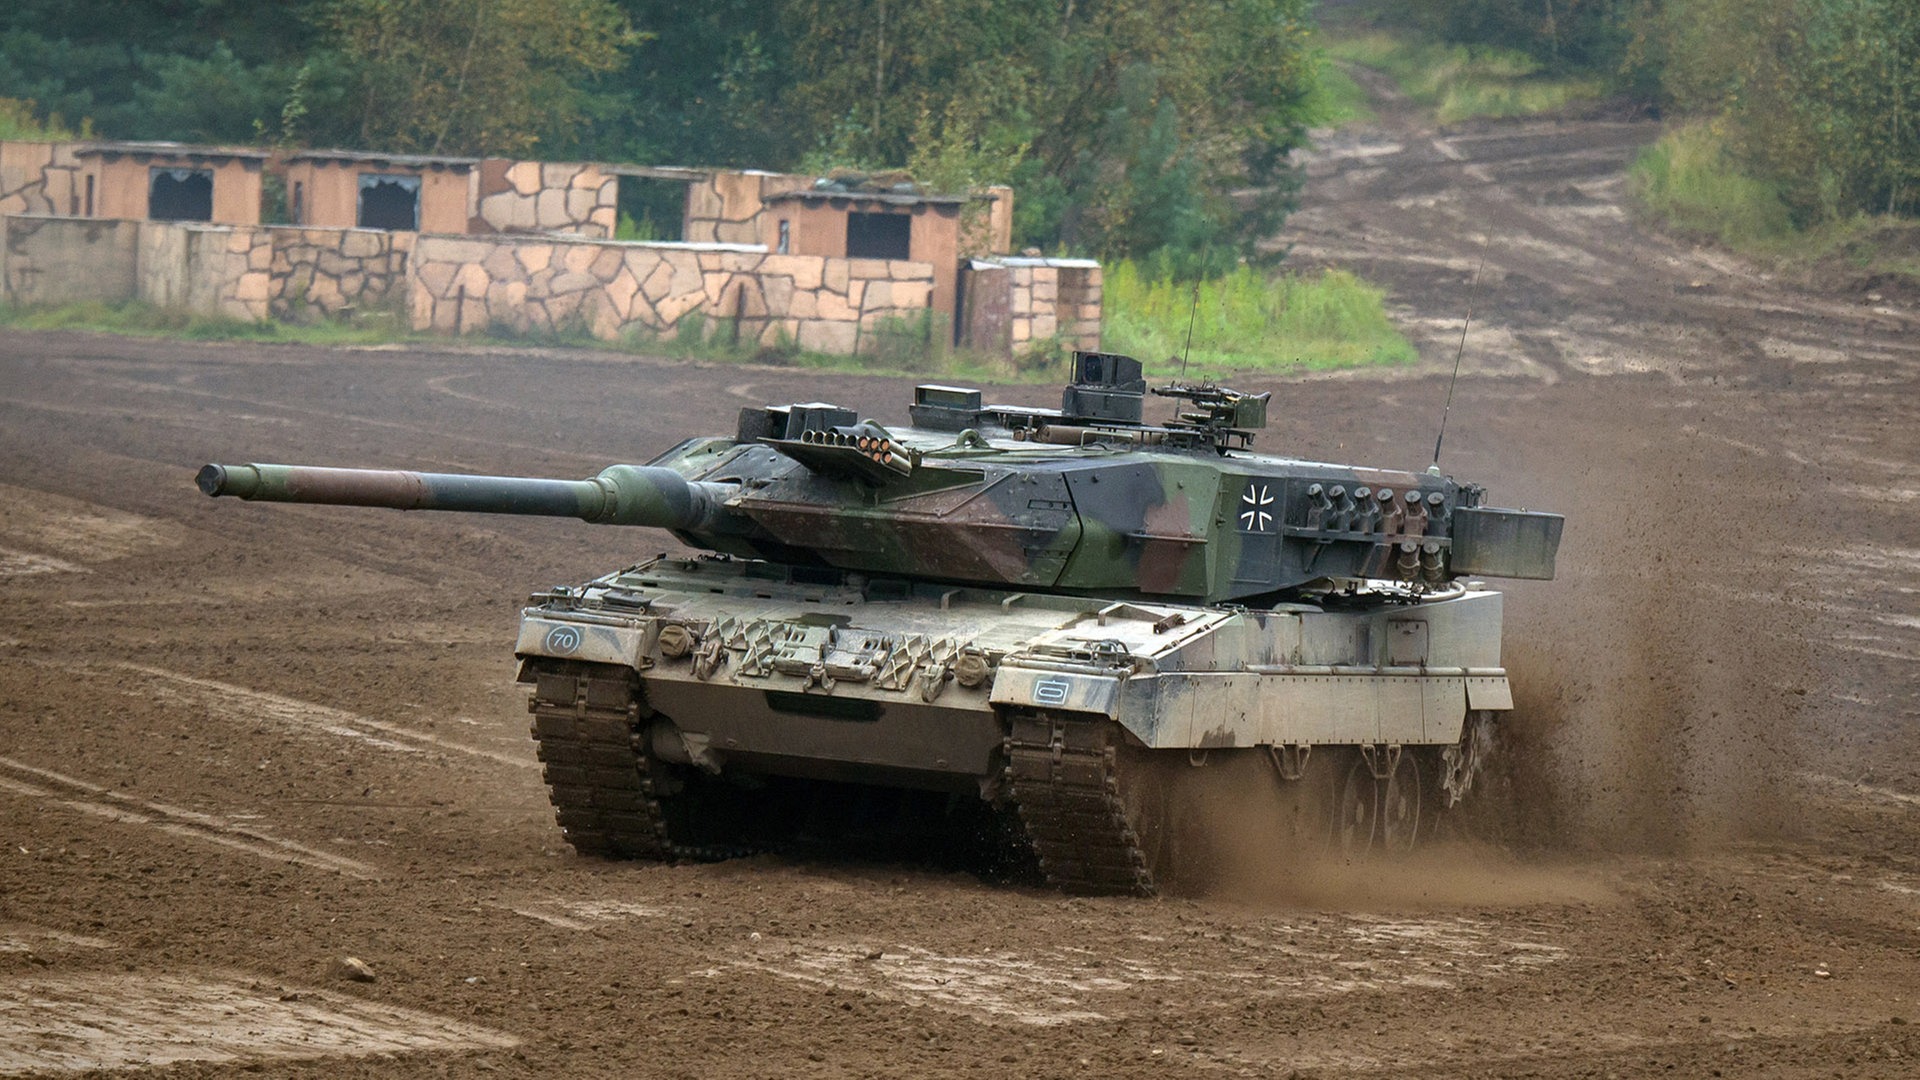 Consegne non lontane: L'esercito ucraino completa il programma di addestramento dei carri armati Leopard 2 in Germania